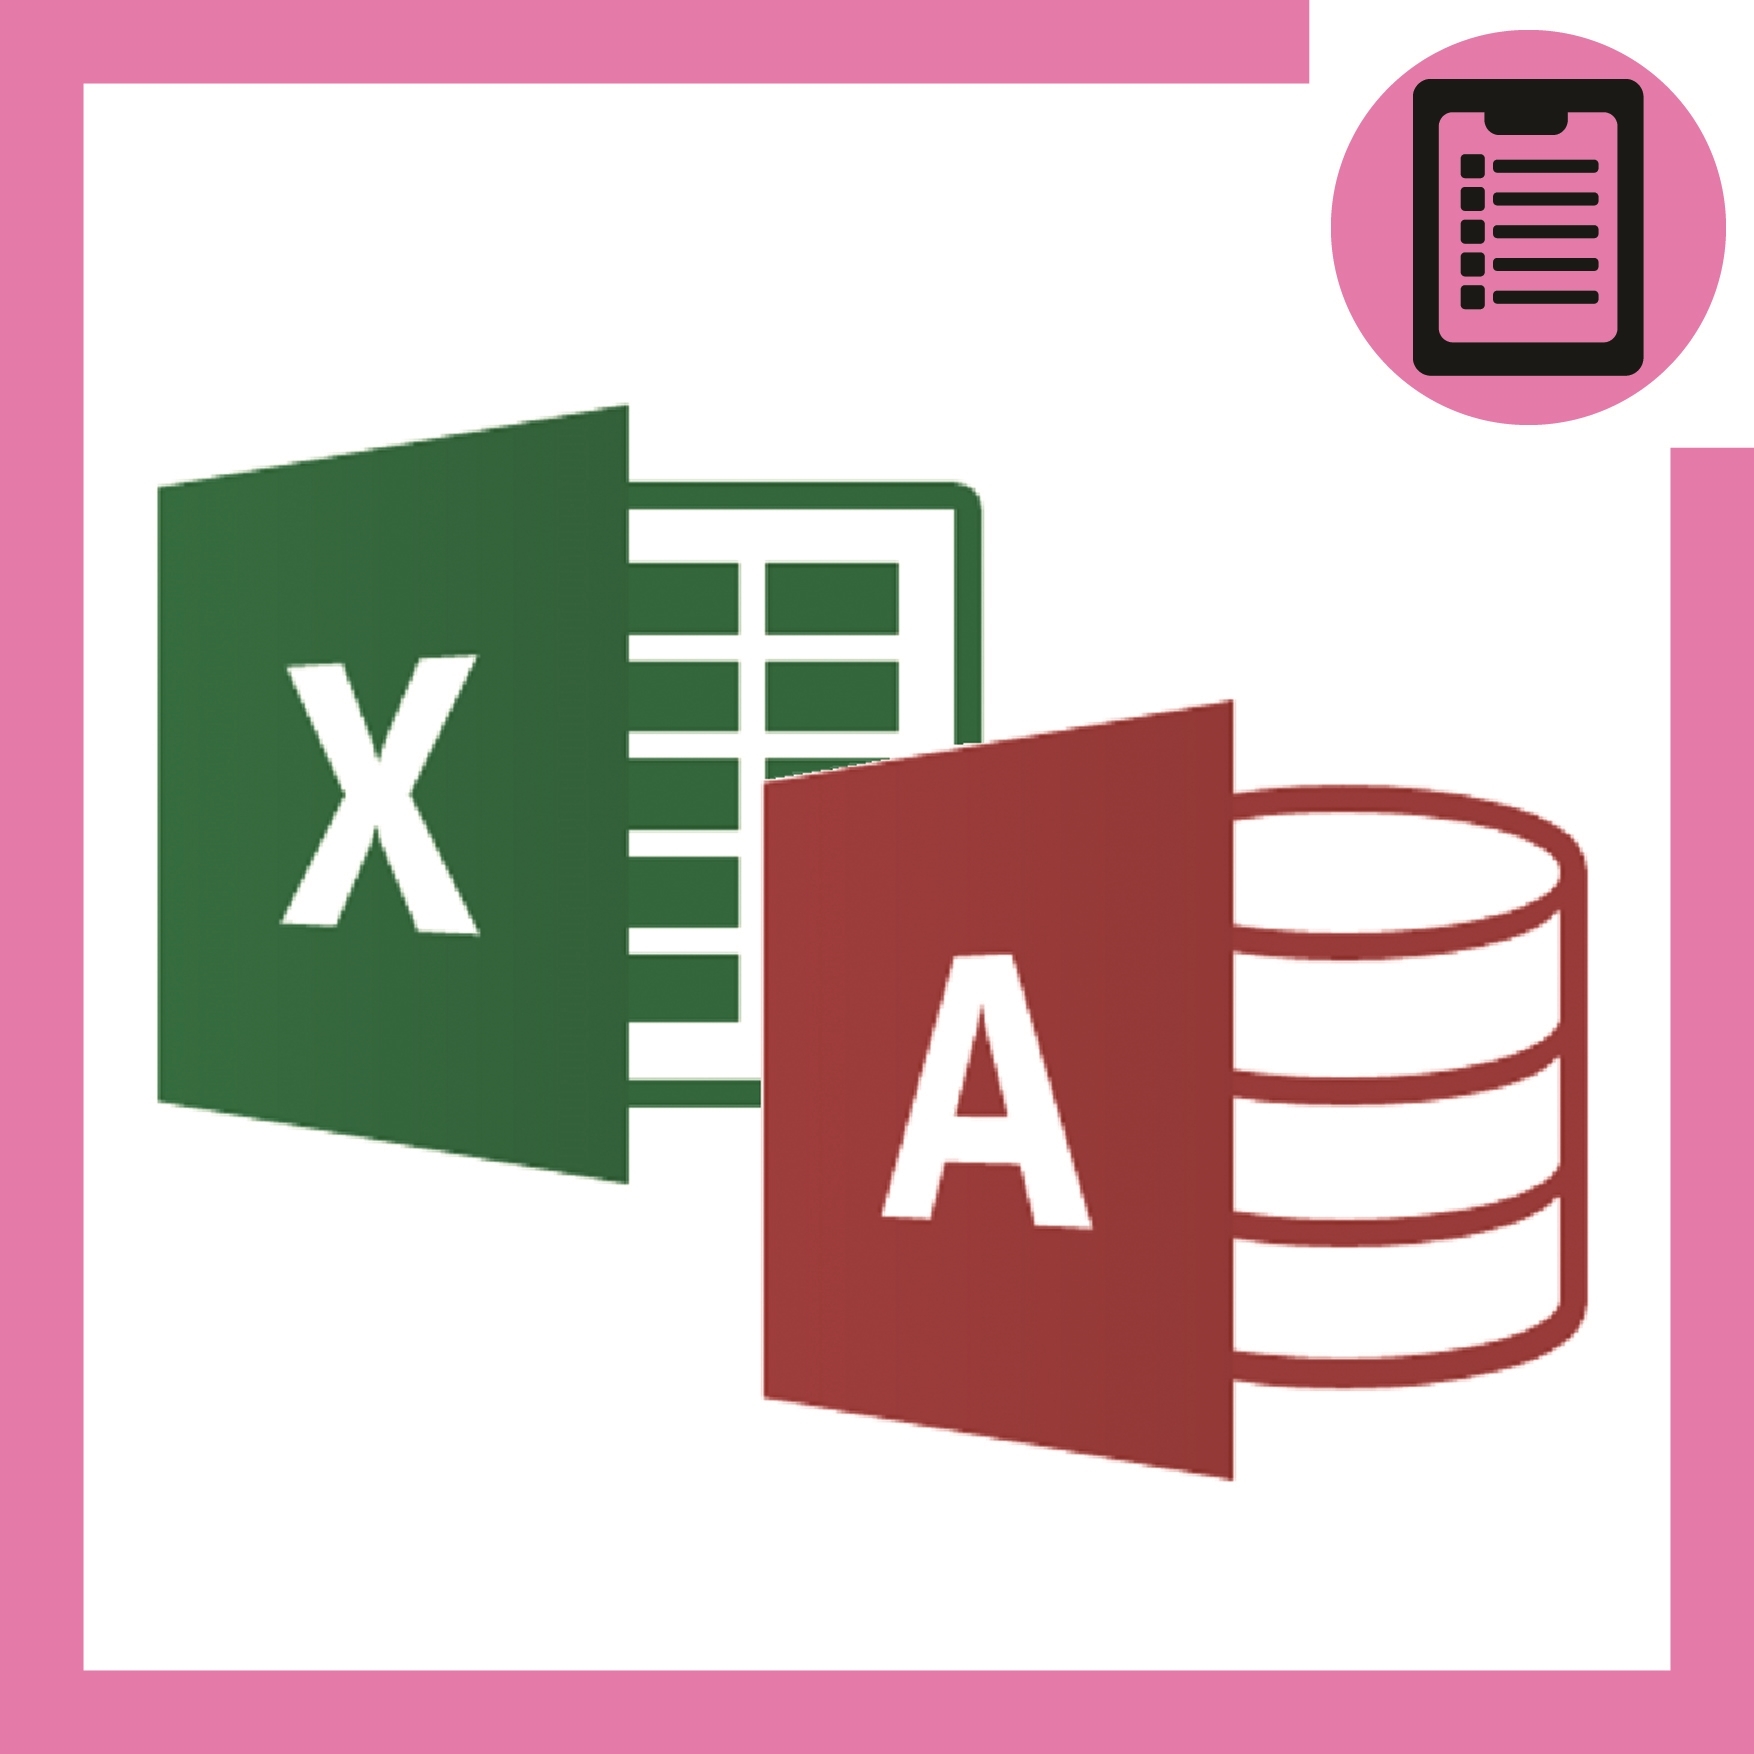 تصویر  آموزش اکسل و اکسس کاربردی Excel & Access (مهندسی پزشکی)